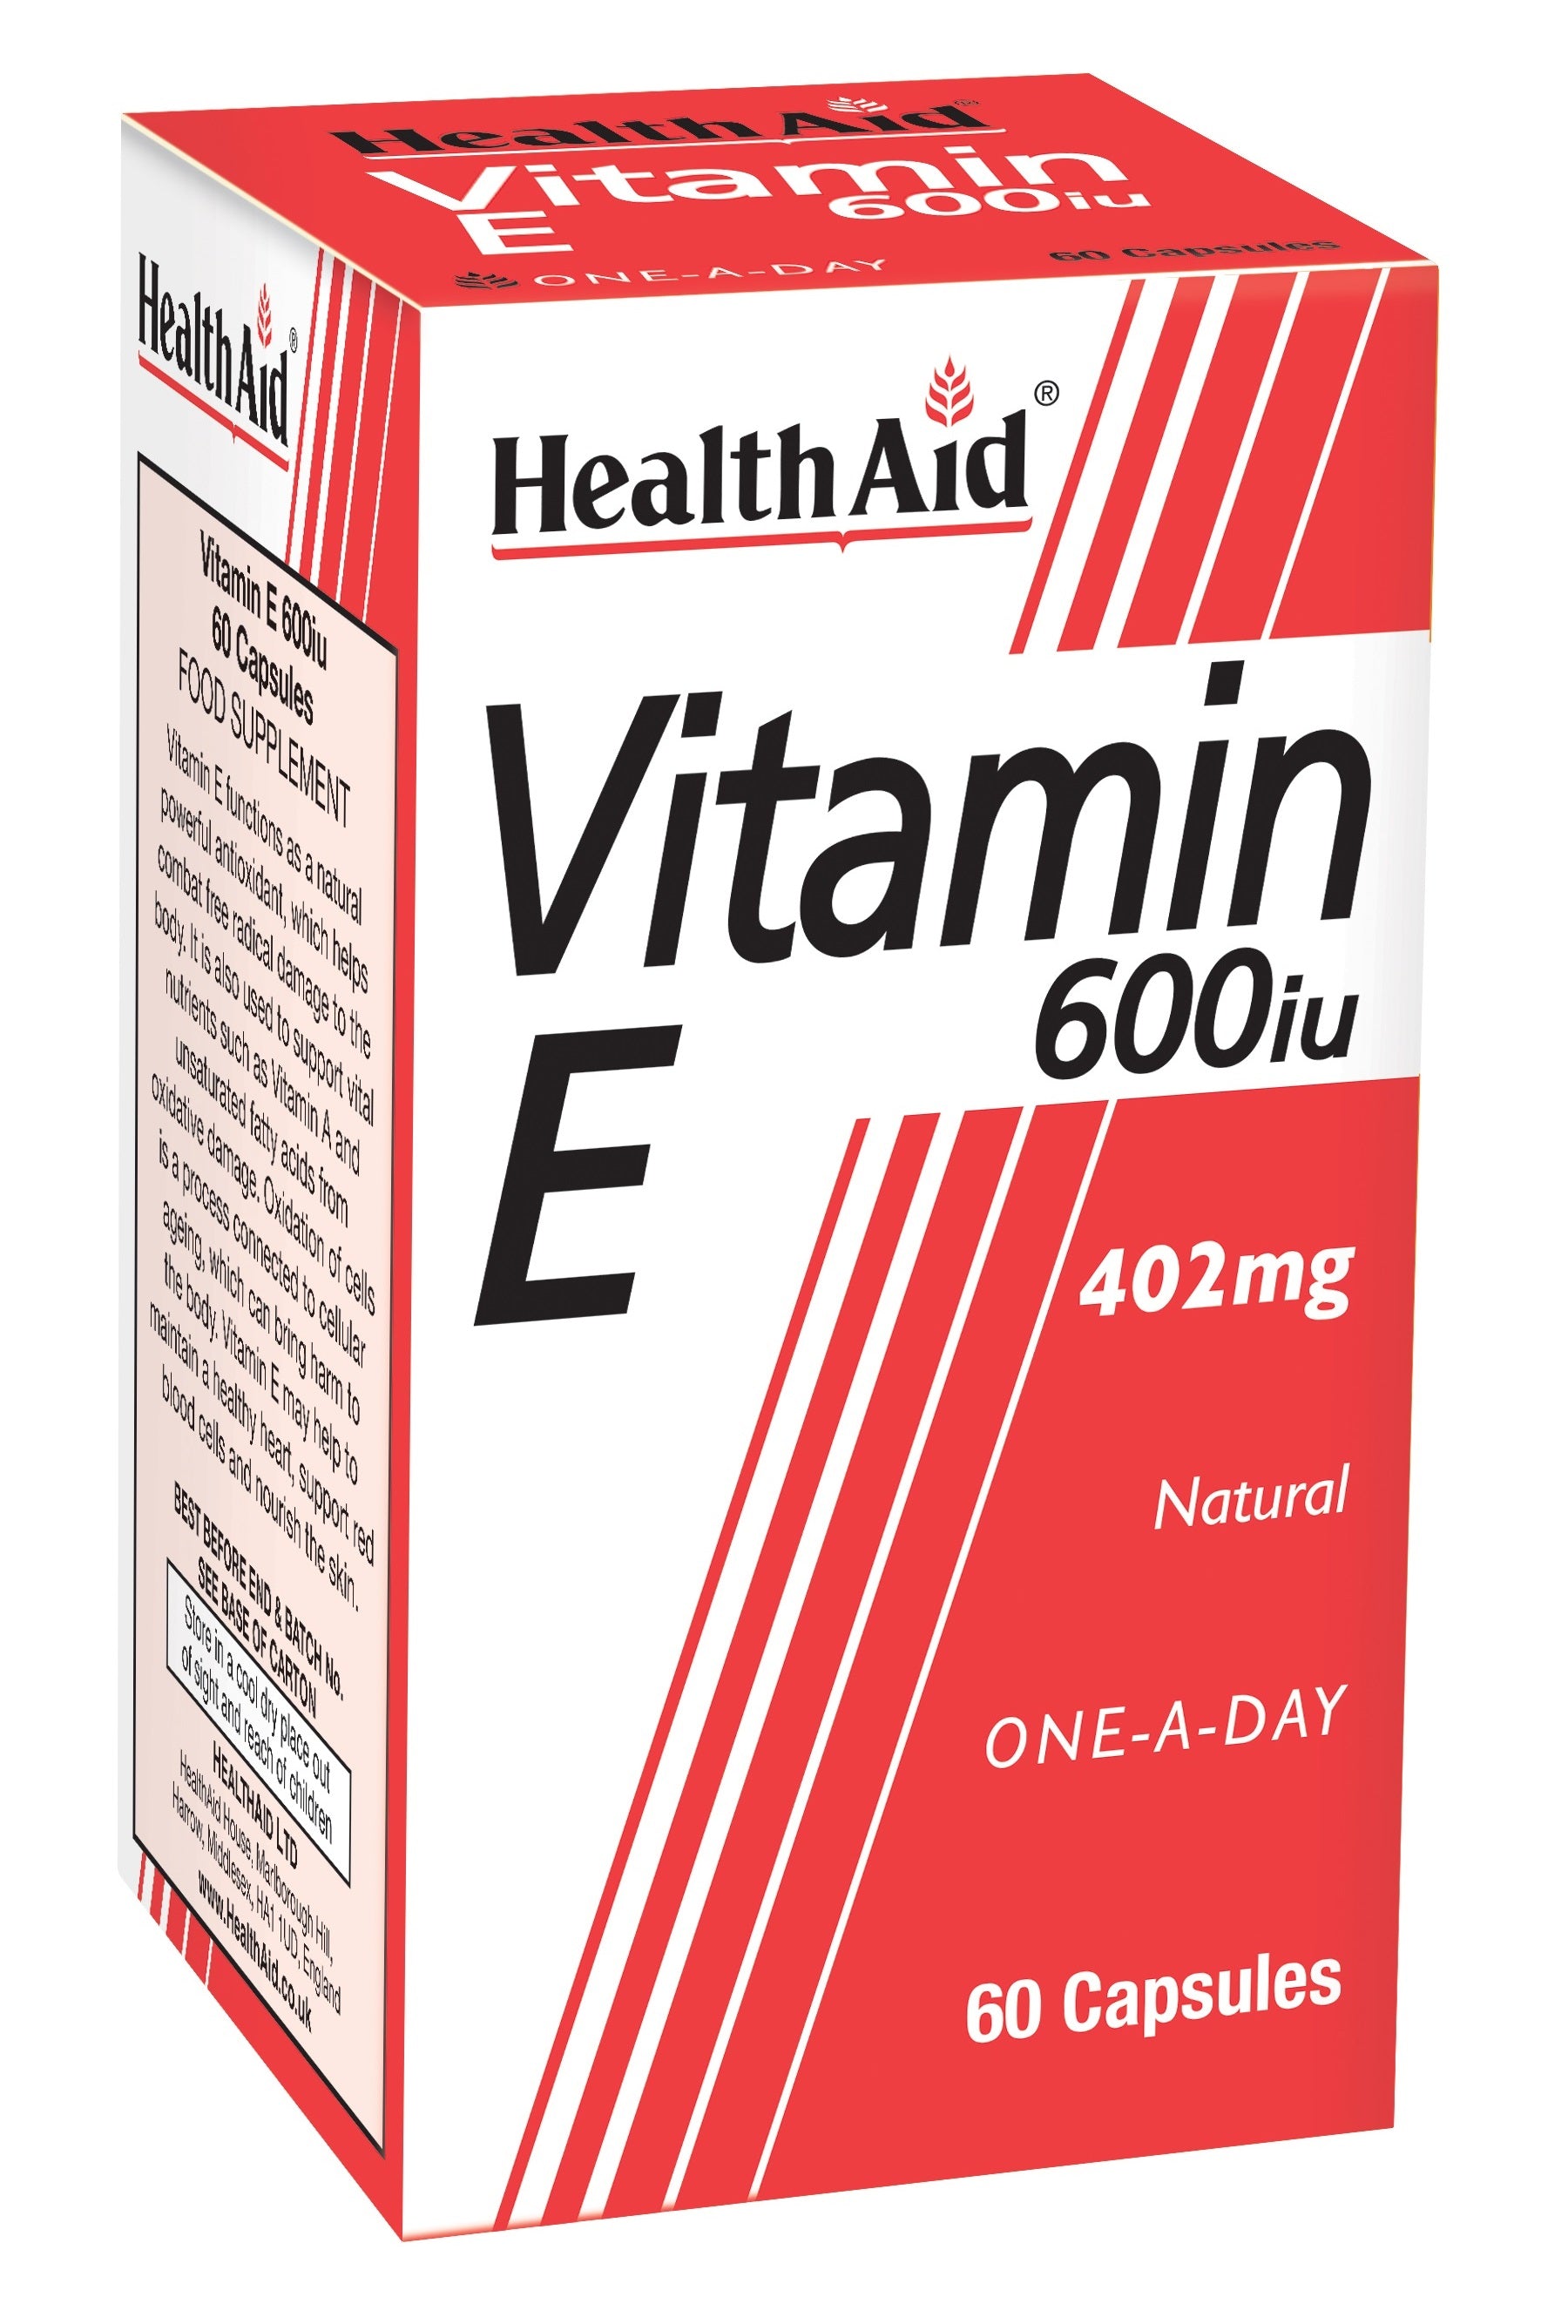 Health Aid Vitamin E 600iu